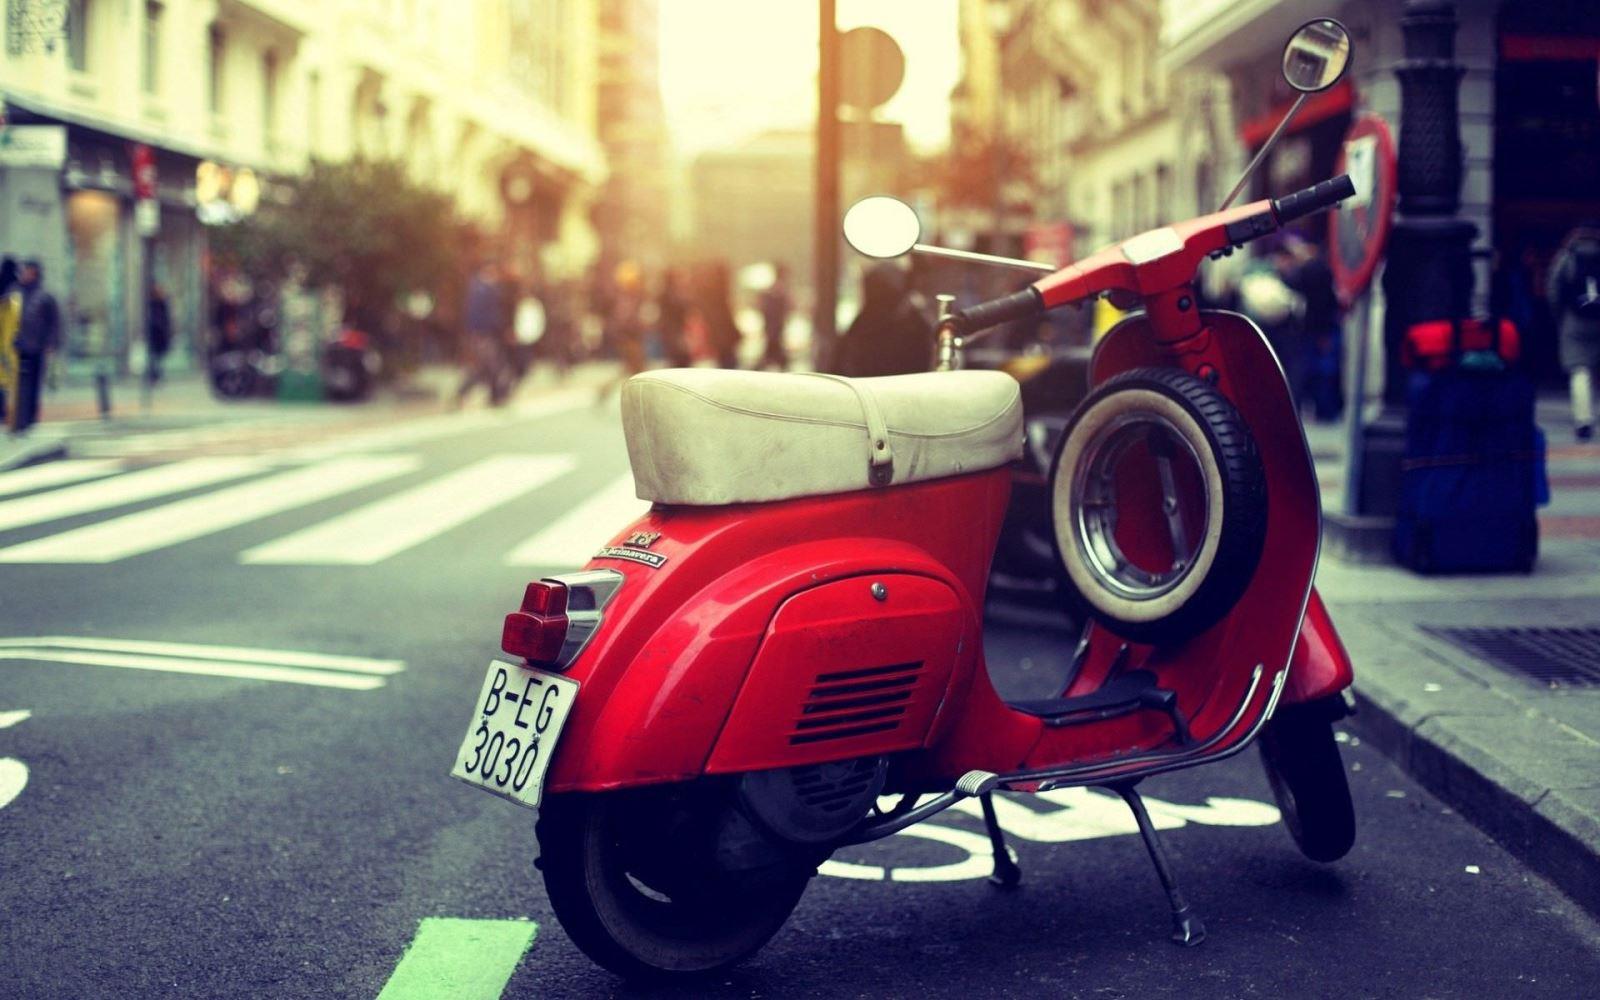  Bảo hiểm xe máy là gì? Có nên mua bảo hiểm xe máy?